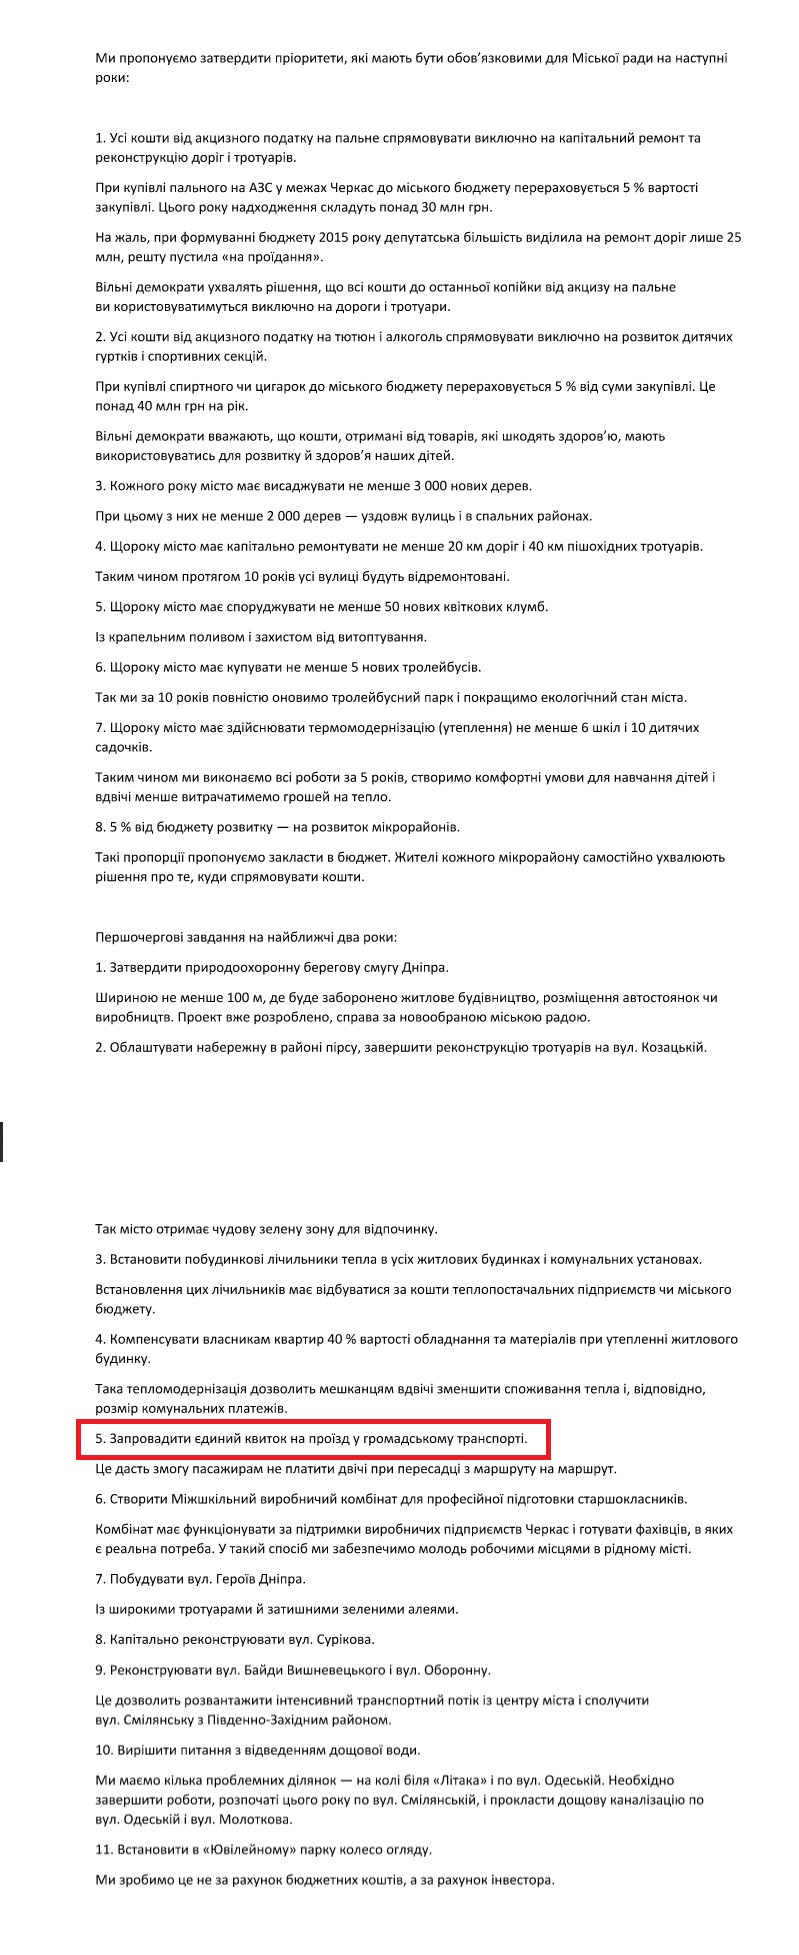 Передвиборна програма Сергія Одарича на місцеві вибори 2015 року